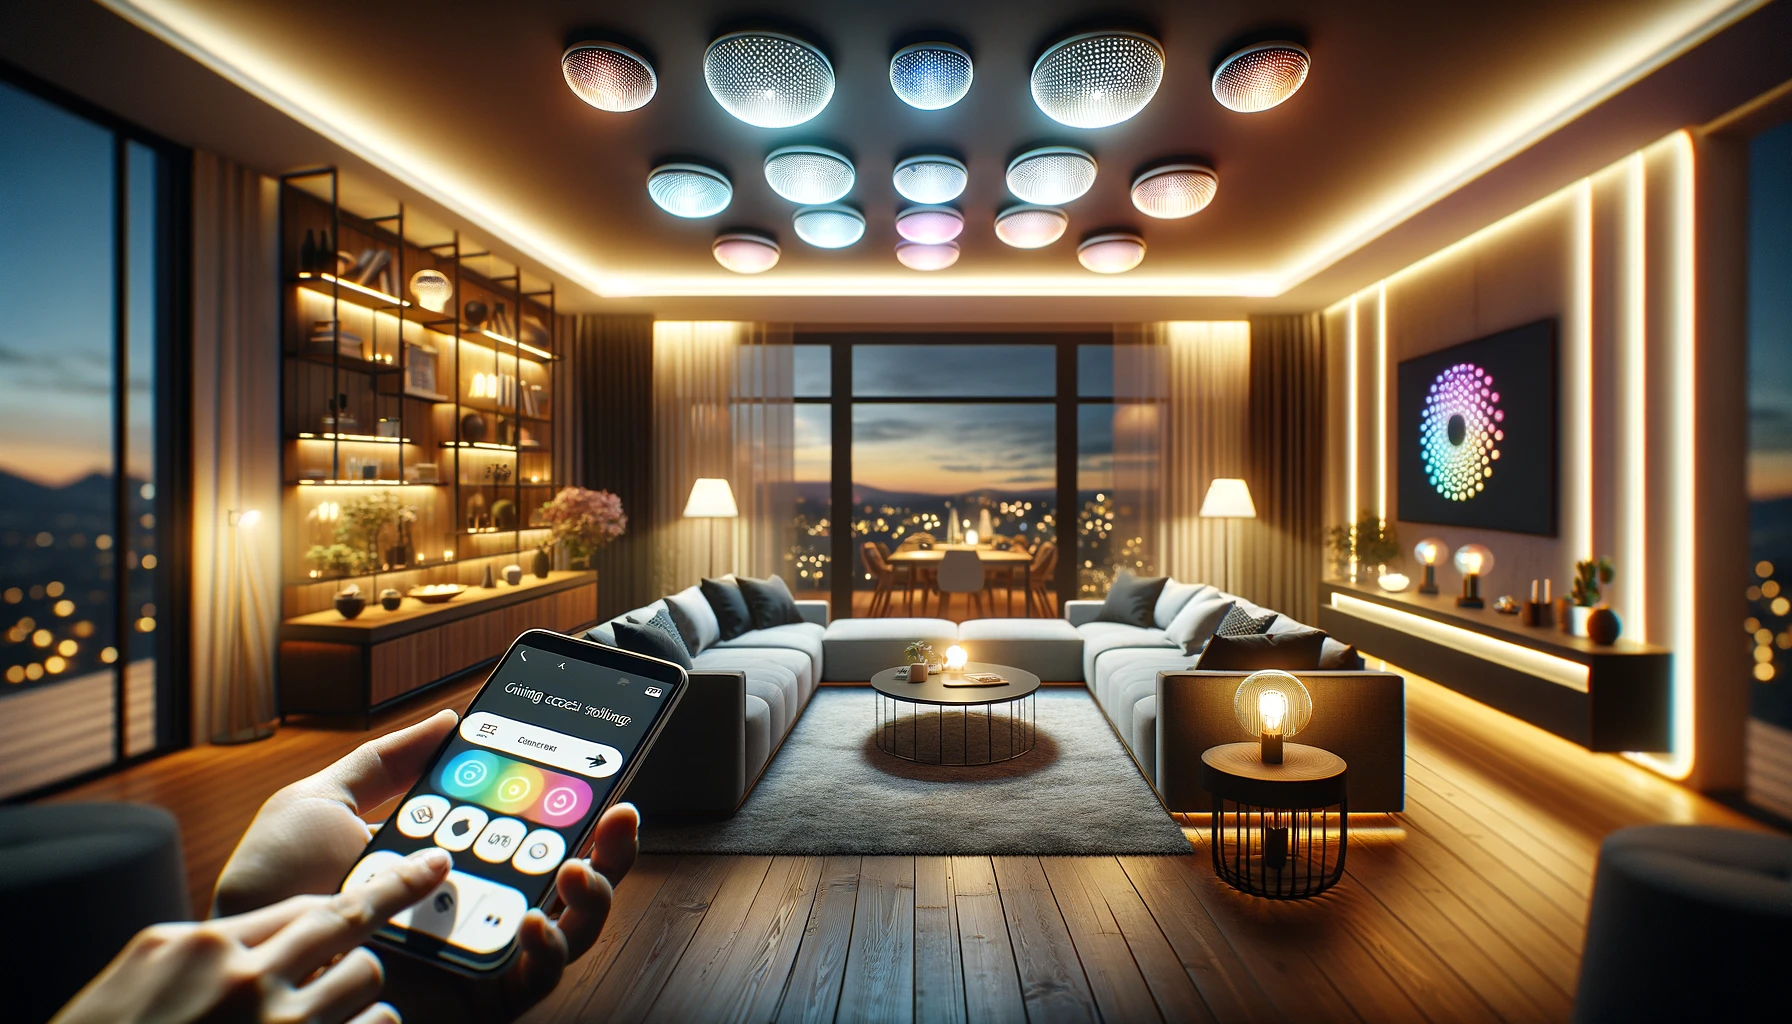 Smart home lighting control via smartphone app.